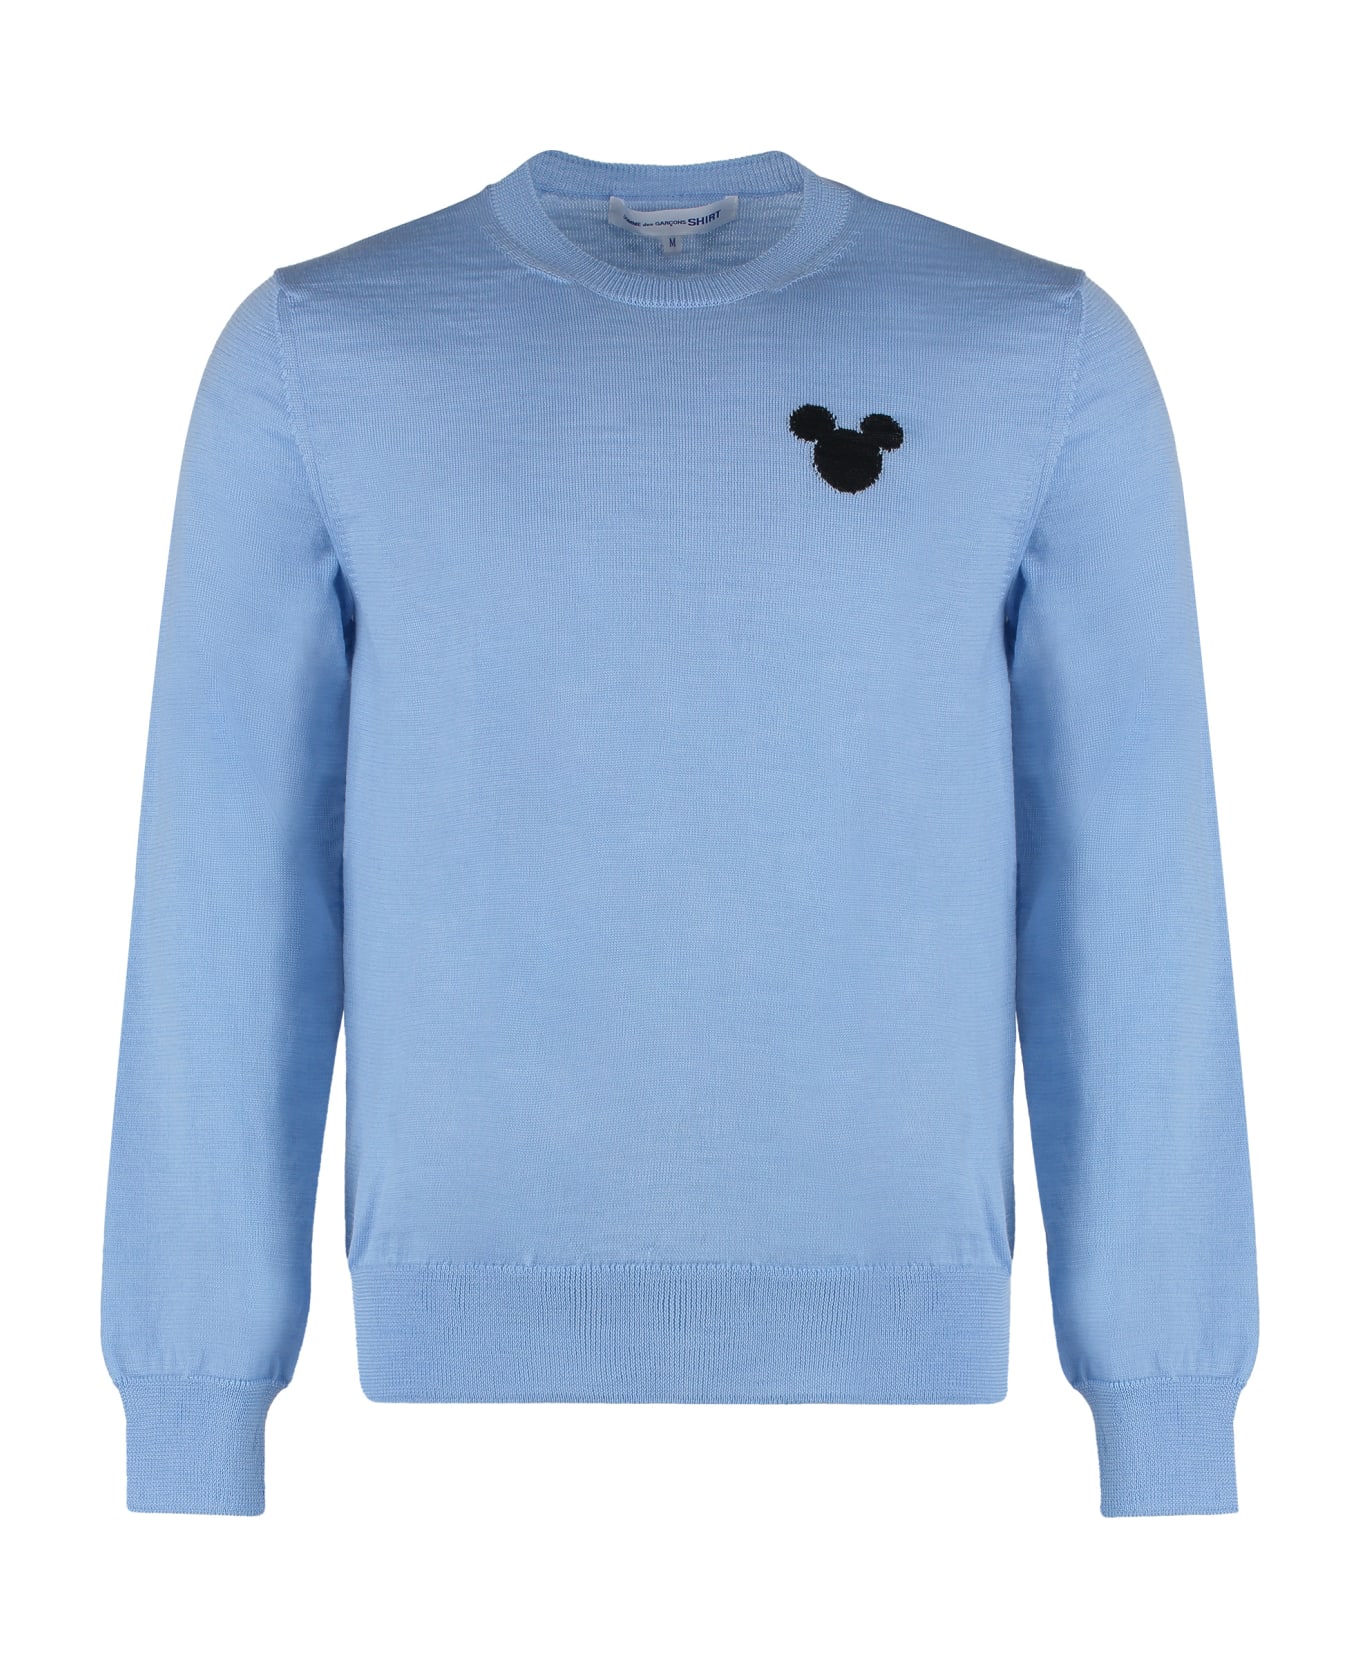 Comme des Garçons Shirt X Disney - Long Sleeve Crew-neck Sweater - Light Blue